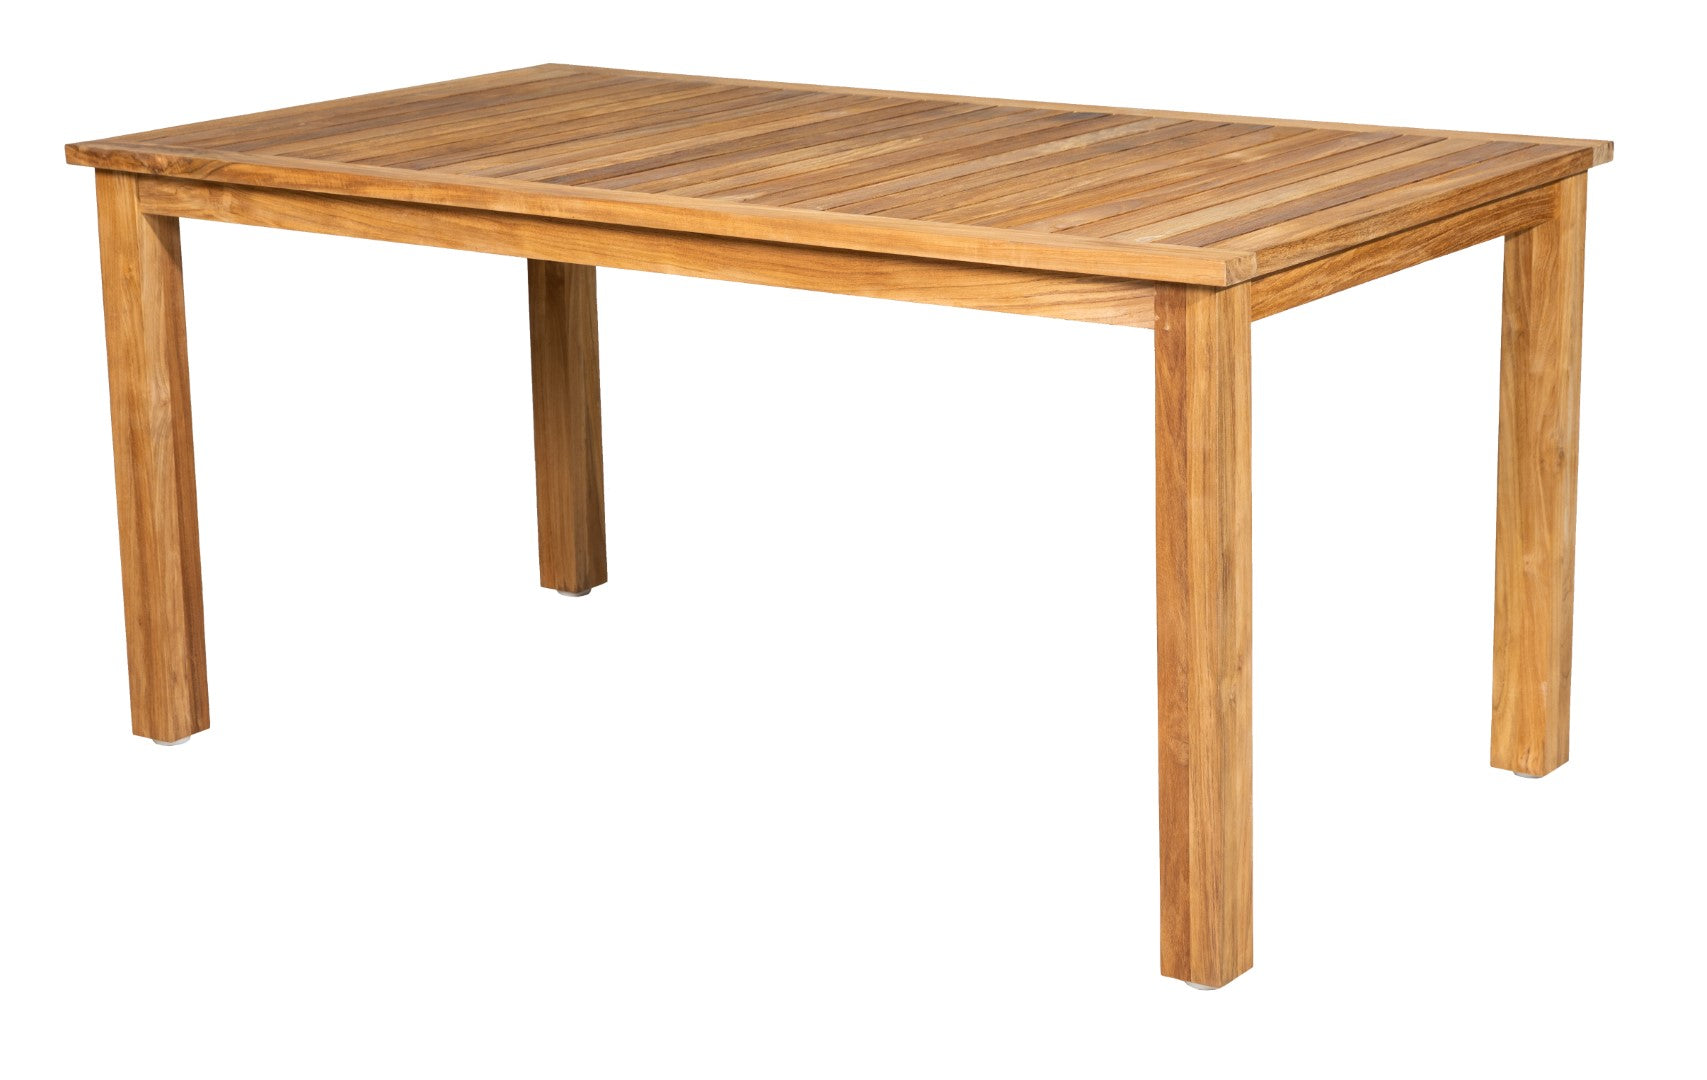 Hochwertiger rechteckiger Tisch aus recyceltem altem Teakholz. Beine mit Schraubfüßen für Niveauausgleich.